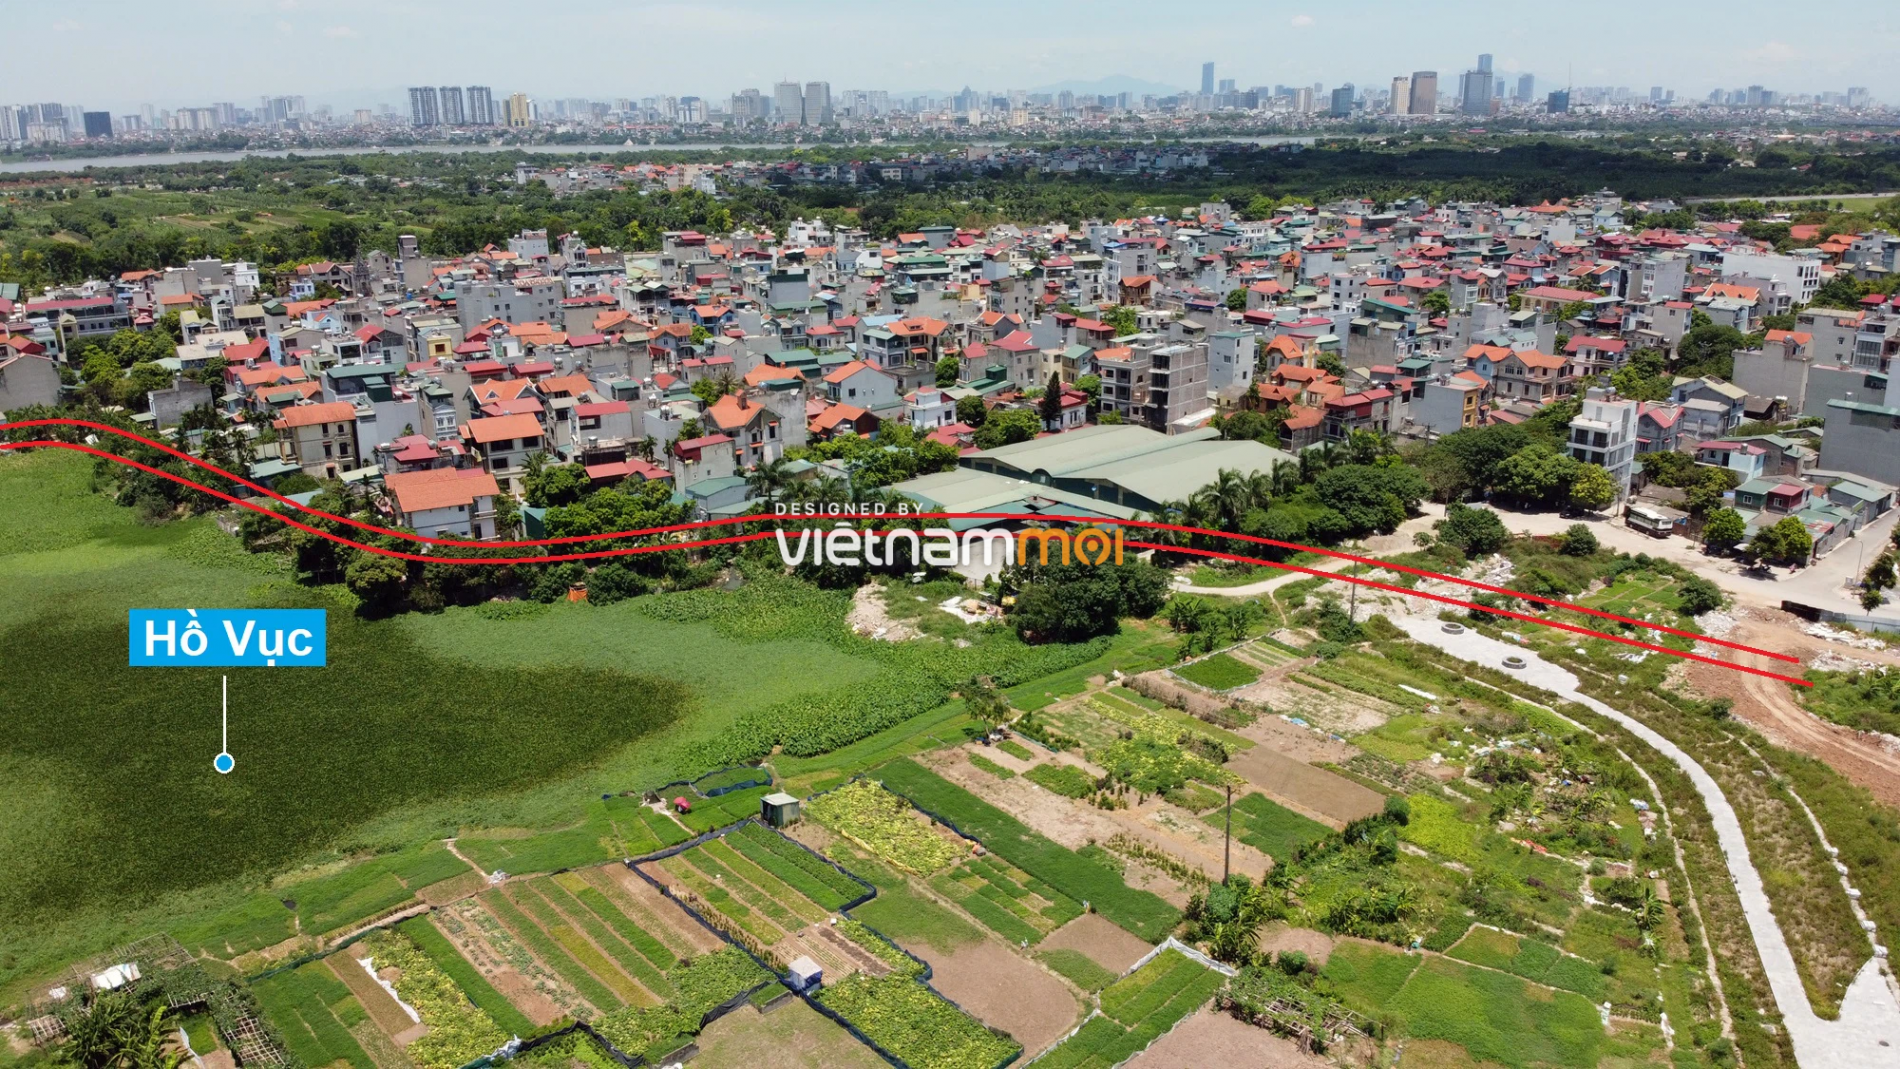 Những khu đất sắp thu hồi để mở đường ở phường Long Biên, Long Biên, Hà Nội (phần 4) - Ảnh 13.